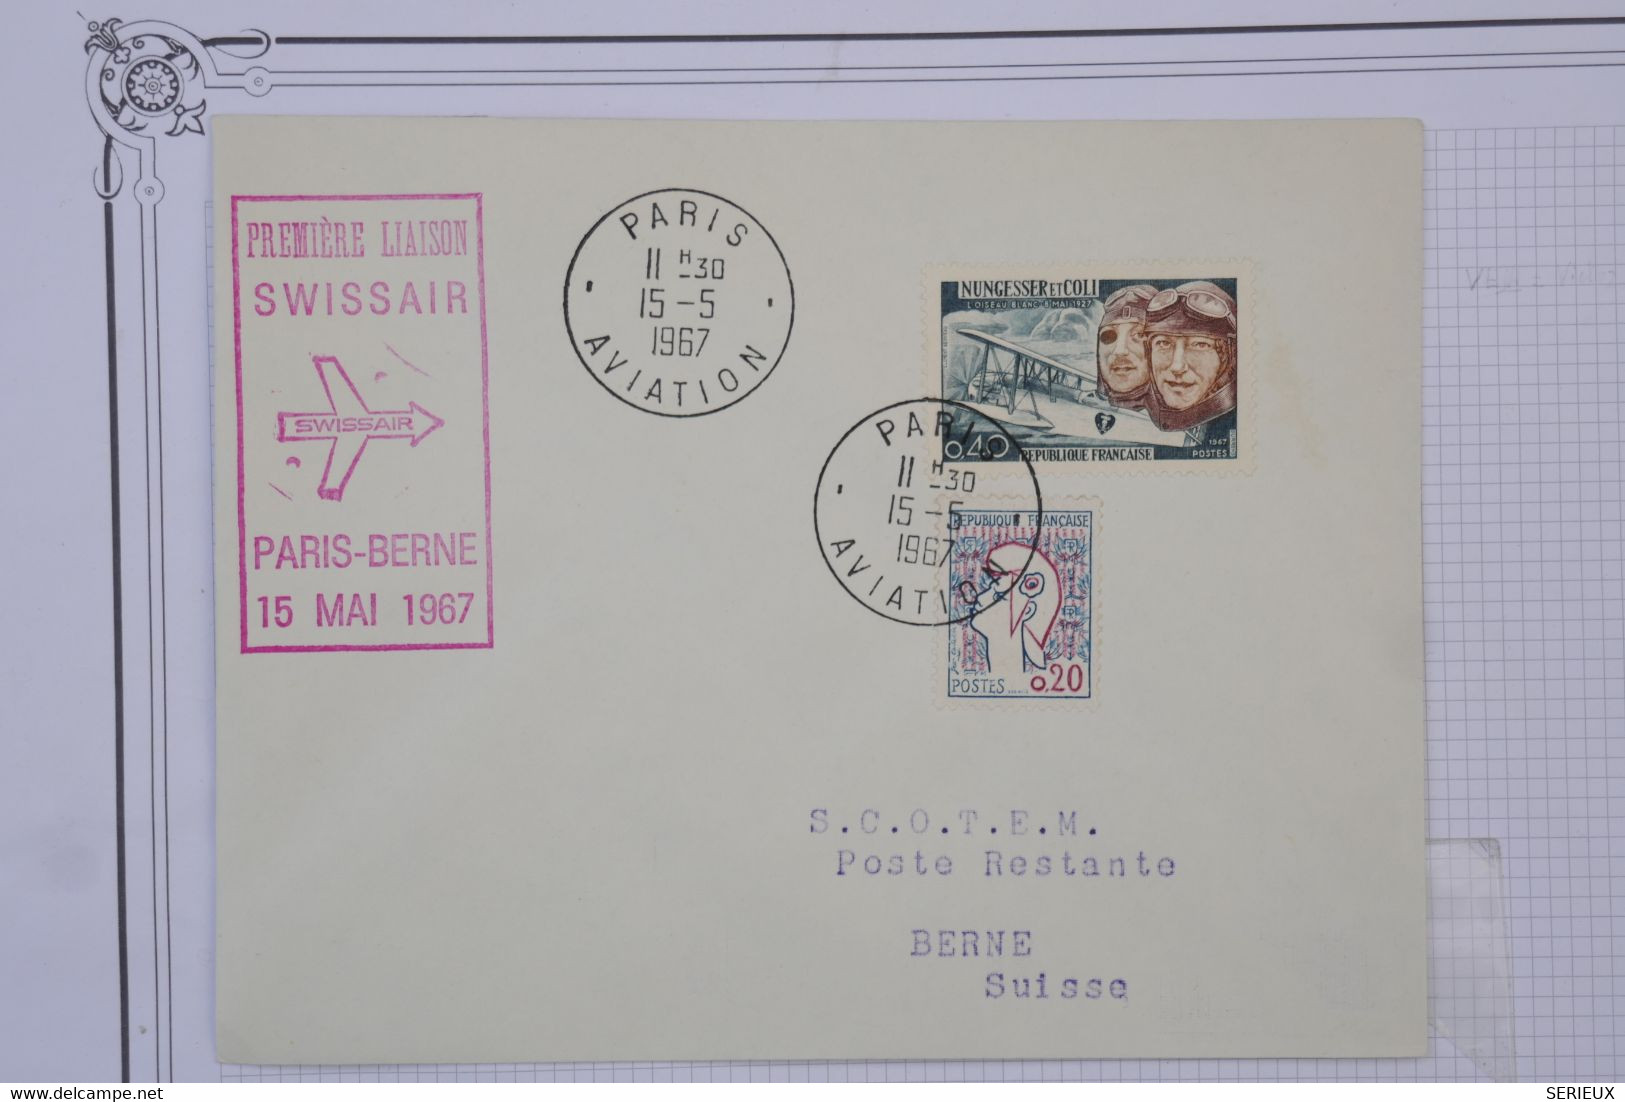 M4 FRANCE BELLE LETTRE 1967 1ER VOL SWISSAIR  PARIS BERNE SUISSE+AEROPHILATELIE+ AFFRANCH. PLAISANT - 1960-.... Briefe & Dokumente